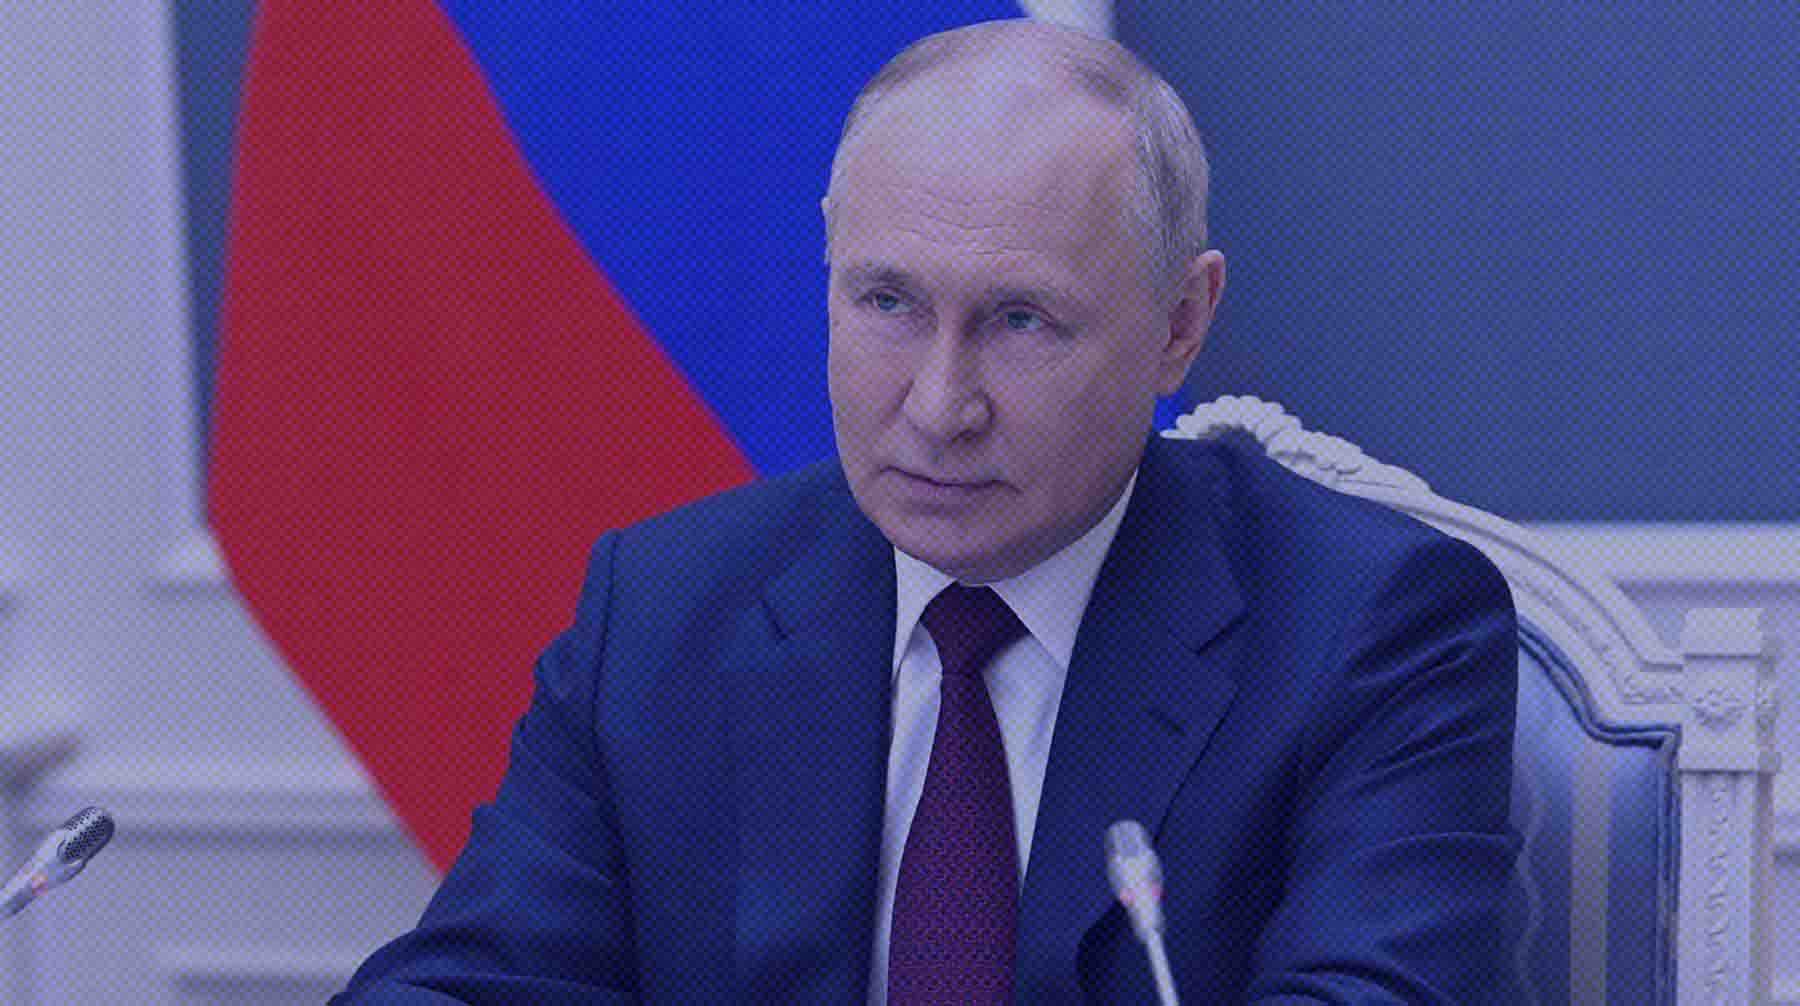 Dailystorm - Путин: Россия в ближайшие месяцы бесплатно поставит странам Африки по 25-50 тысяч тонн зерна